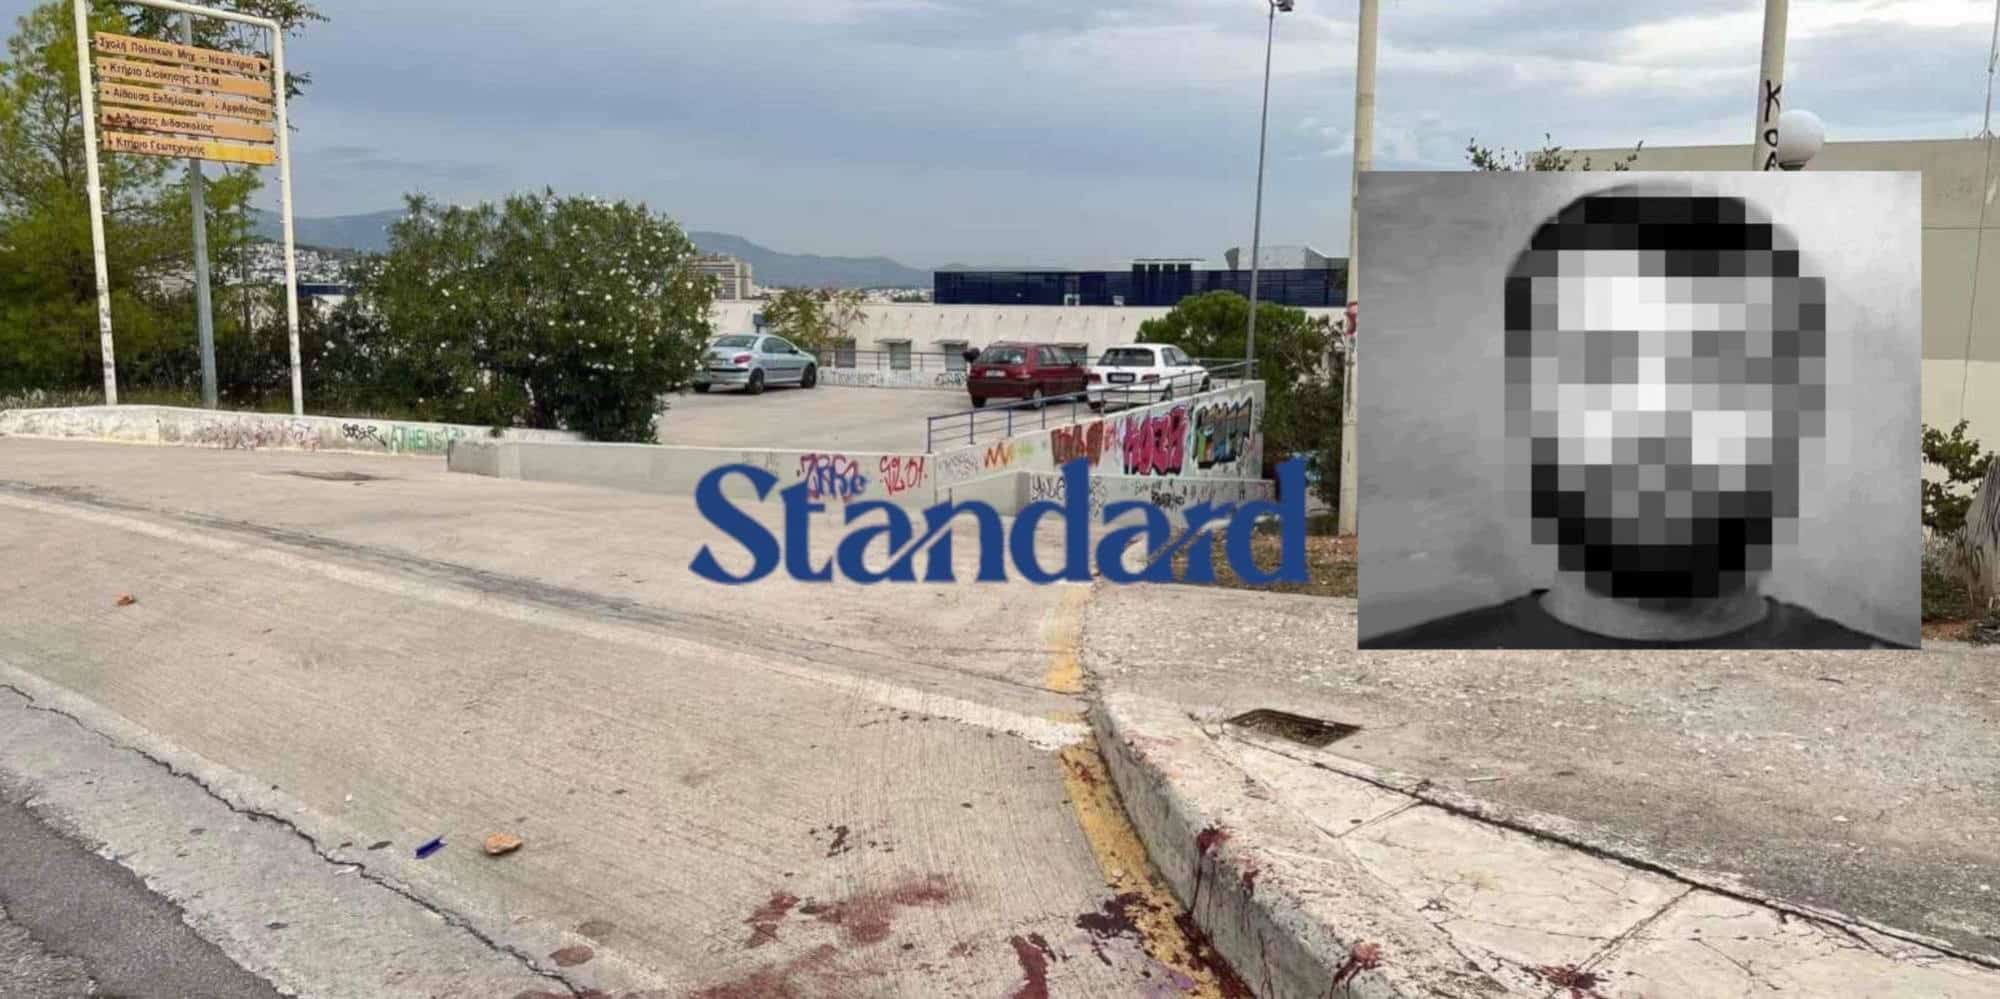 Ο 30χρονος Αλβανός που δέχθηκε πυροβολισμό αστυνομικού στην Πολυτεχνειούπολη Ζωγράφου